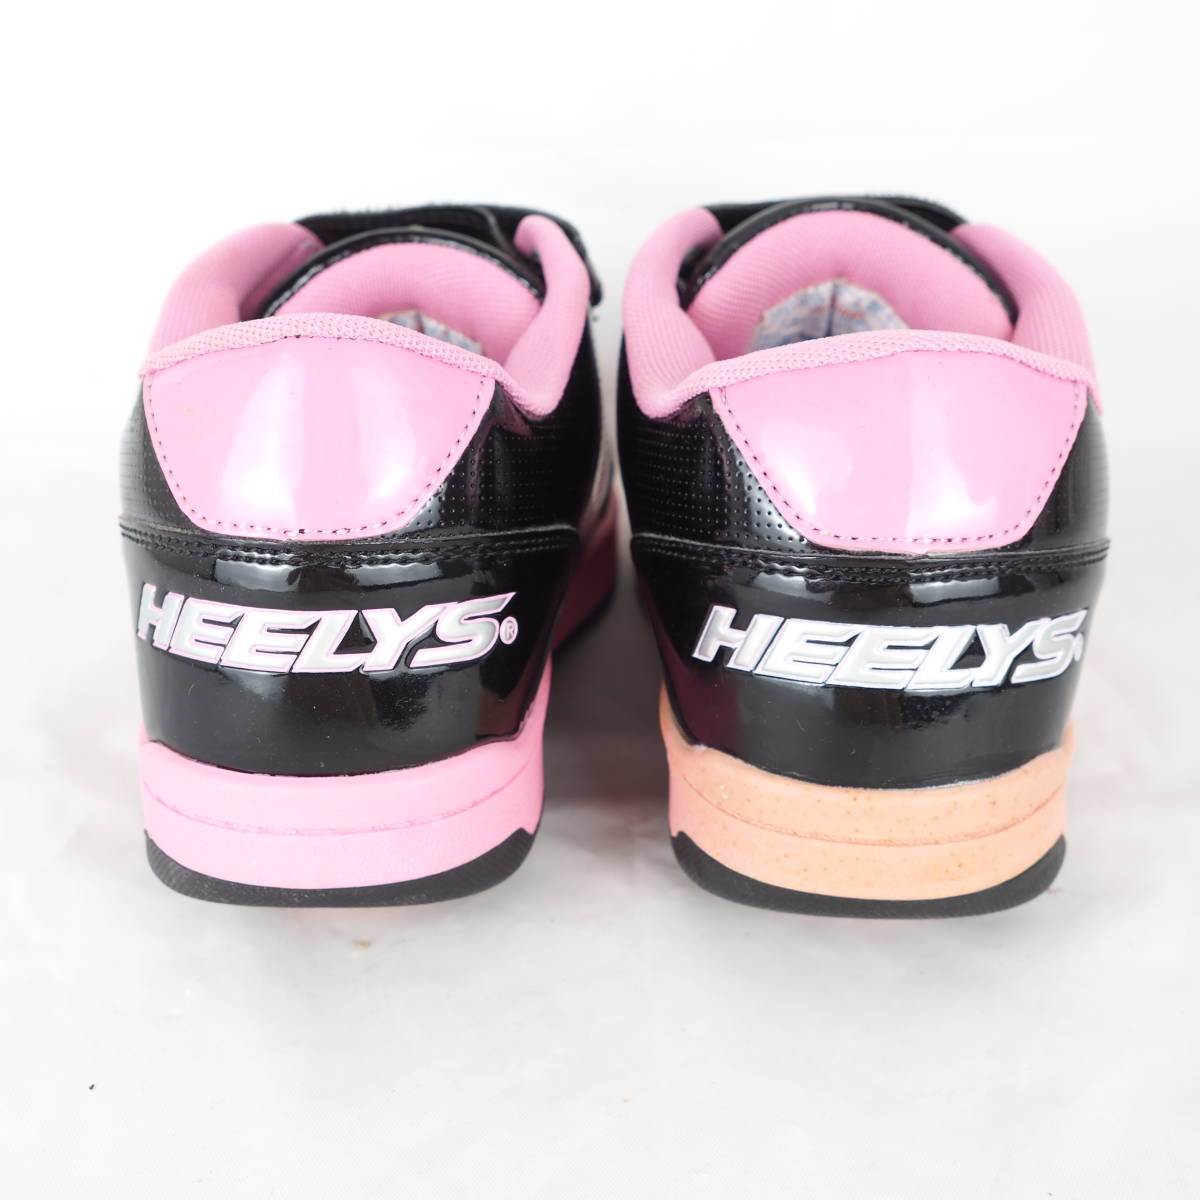 MK0945*HEELYS*hi- Lee z* ролик обувь *22cm* чёрный × розовый *